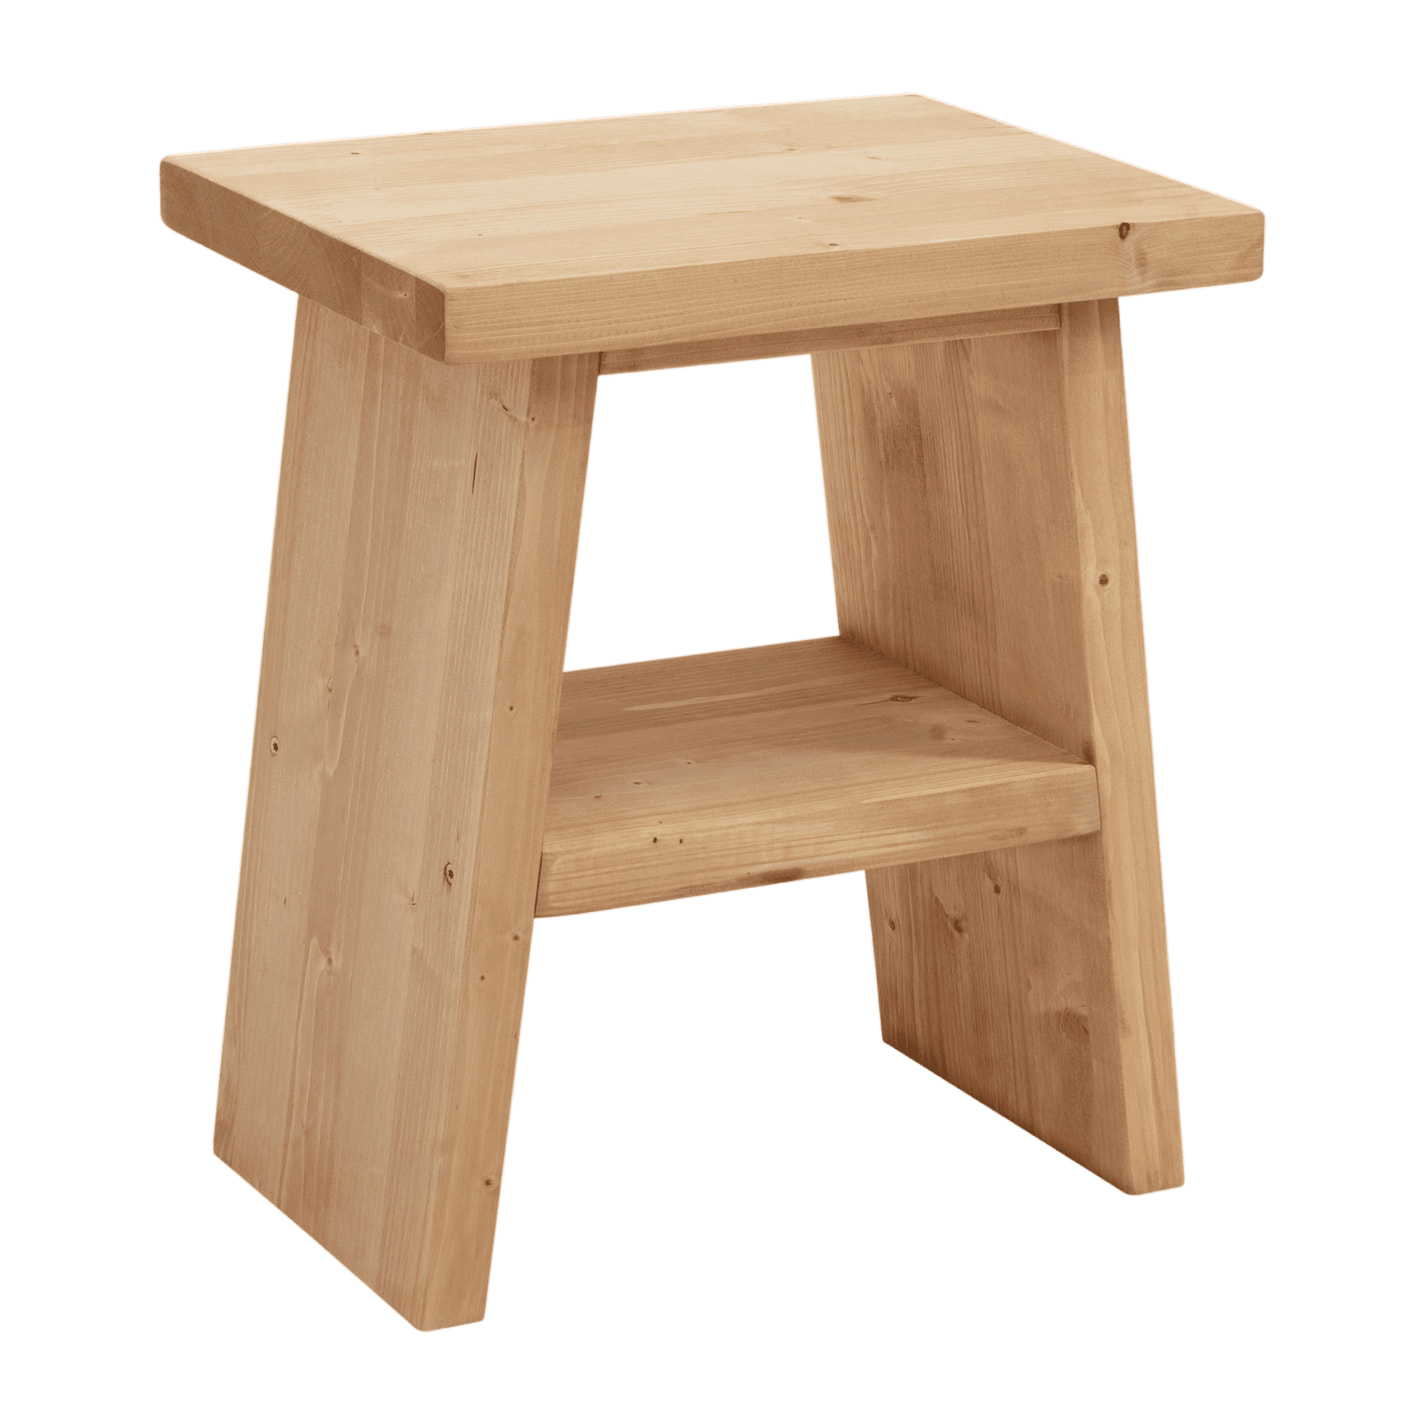 Table de chevet ou table d'appoint en bois massif ton chêne moyen 45x39cm Hauteur: 45 Longueur: 39 Largeur: 25